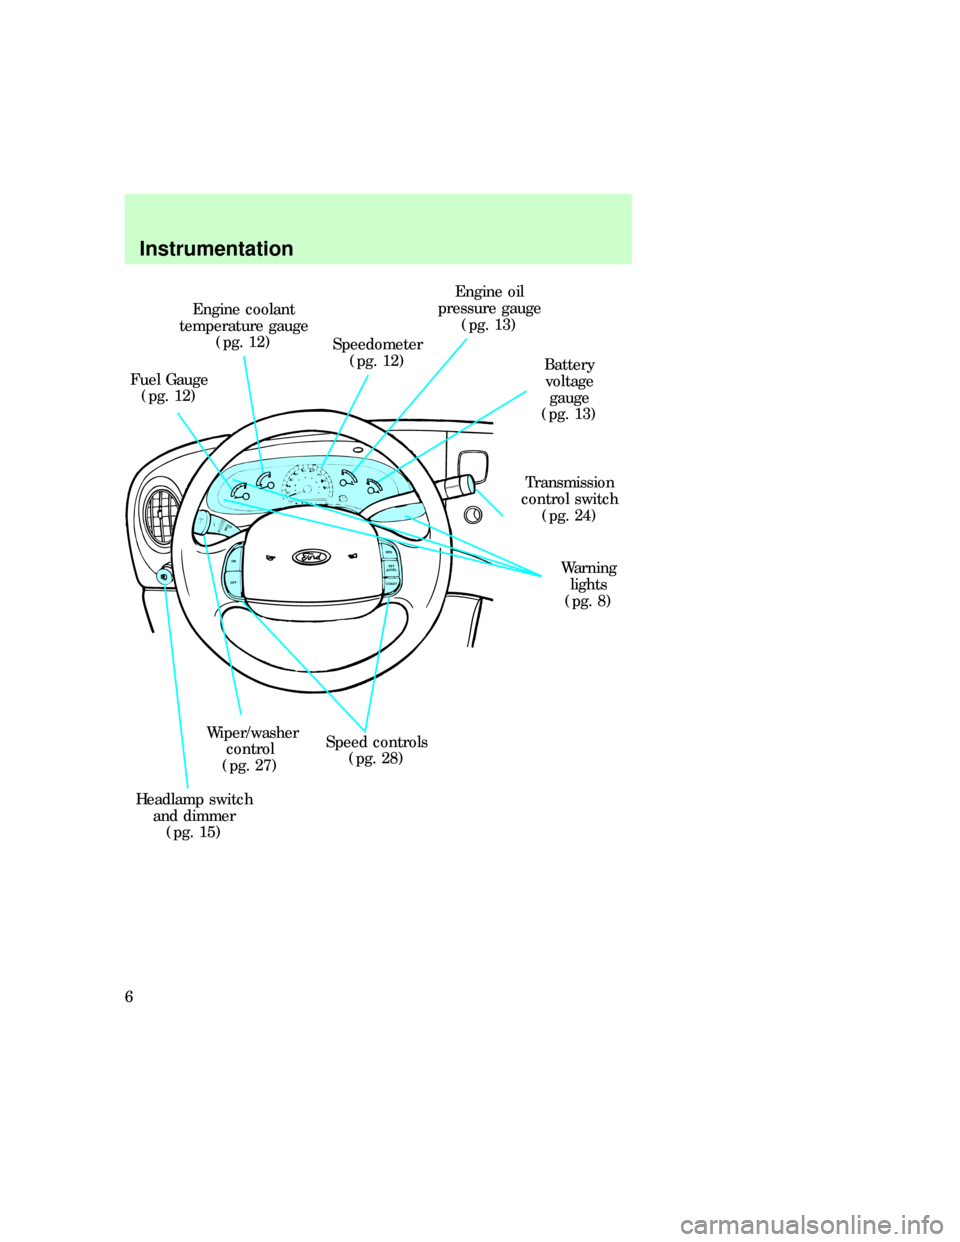 FORD E SERIES 1997 4.G Owners Manual OVERDRIVE
ON
OFFRES
SET
ACCEL
COAST
Engine coolant
temperature gauge
(pg. 12)
Fuel Gauge
(pg. 12)Speedometer
(pg. 12)Engine oil
pressure gauge
(pg. 13)
Battery
voltage
gauge
(pg. 13)
Warning
lights
(p